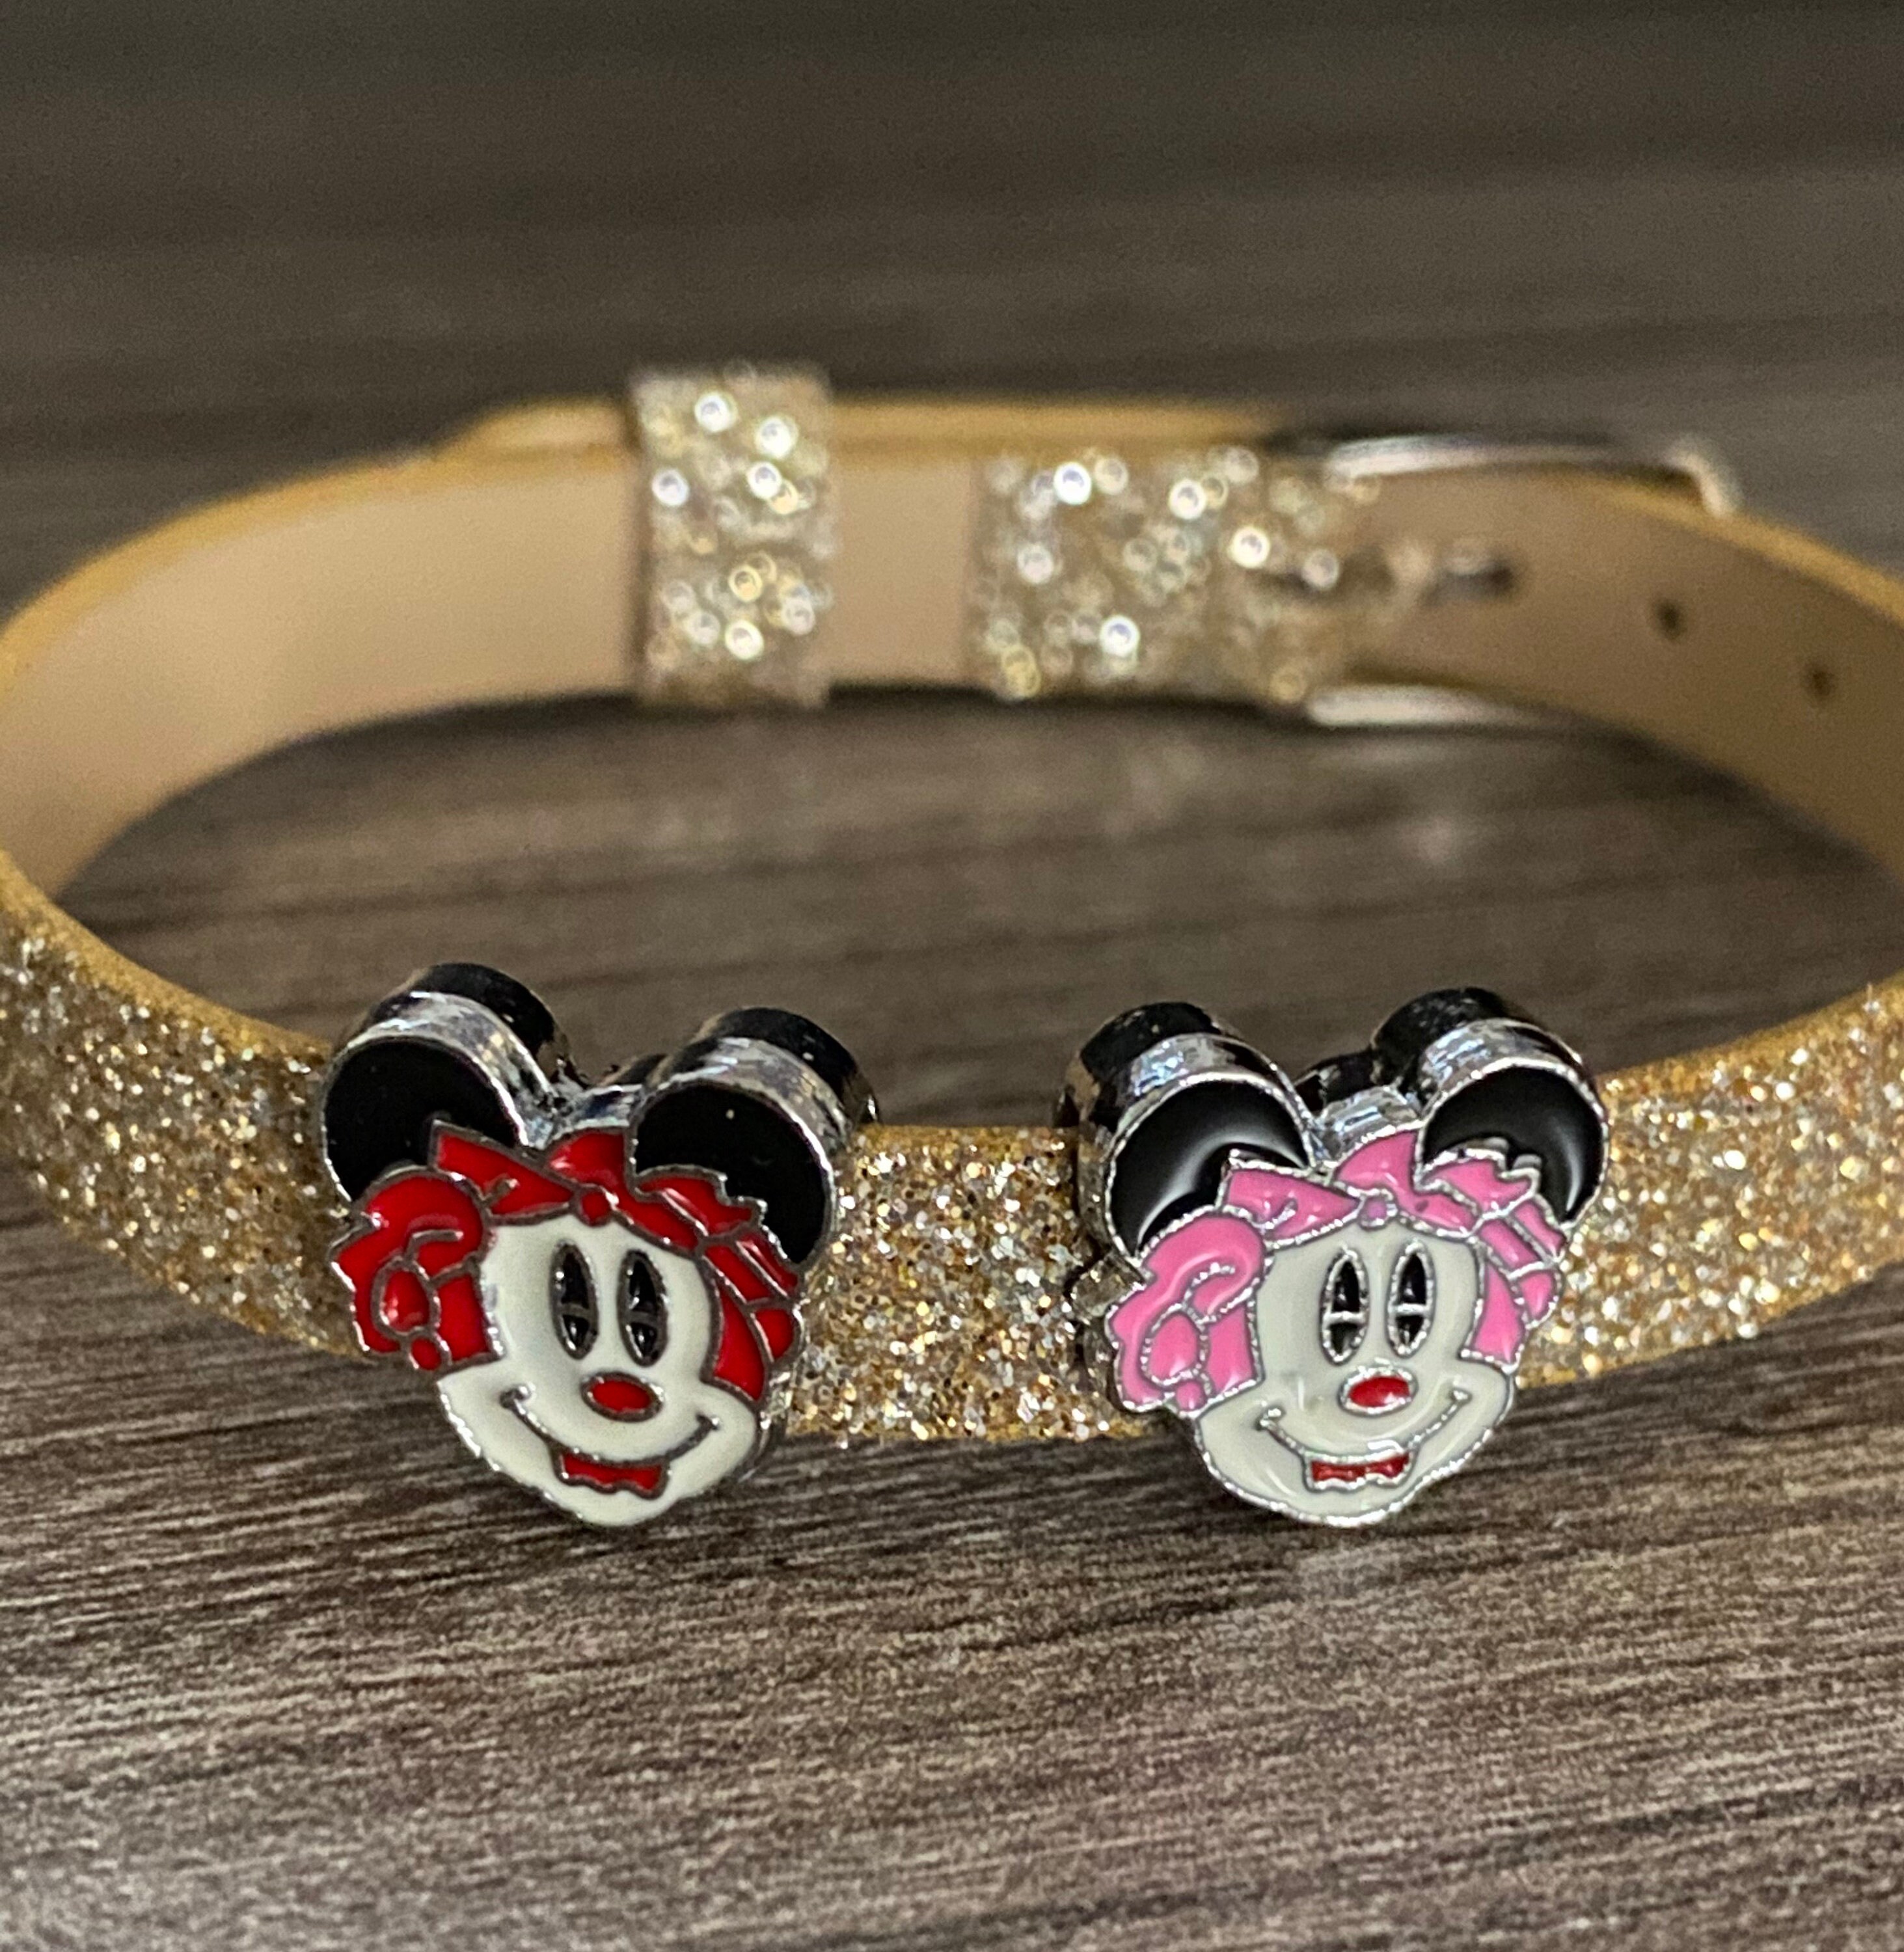 Swarovski × Disney Collaboration Mickey Mouse Bracelet Near Mint | eBay